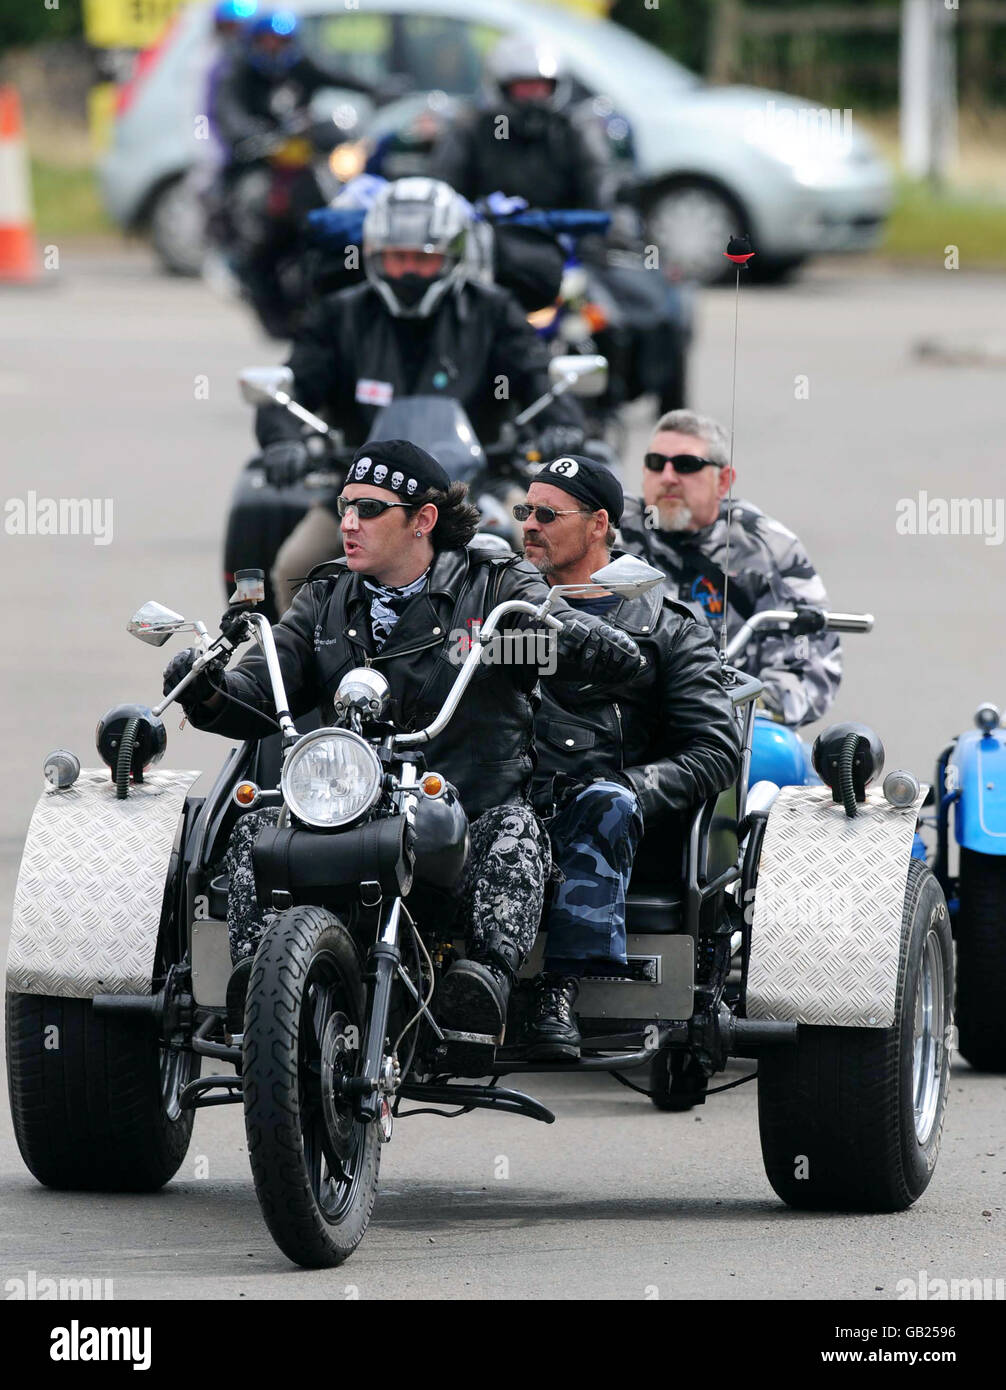 I motociclisti arrivano per il festival motociclistico Bulldog Bash all'Avon Park Raceway, Long Marston, Warwickshire. C'è una forte presenza di polizia all'evento dopo la morte di Hell's Angel Gerry Tobin l'anno scorso. Foto Stock